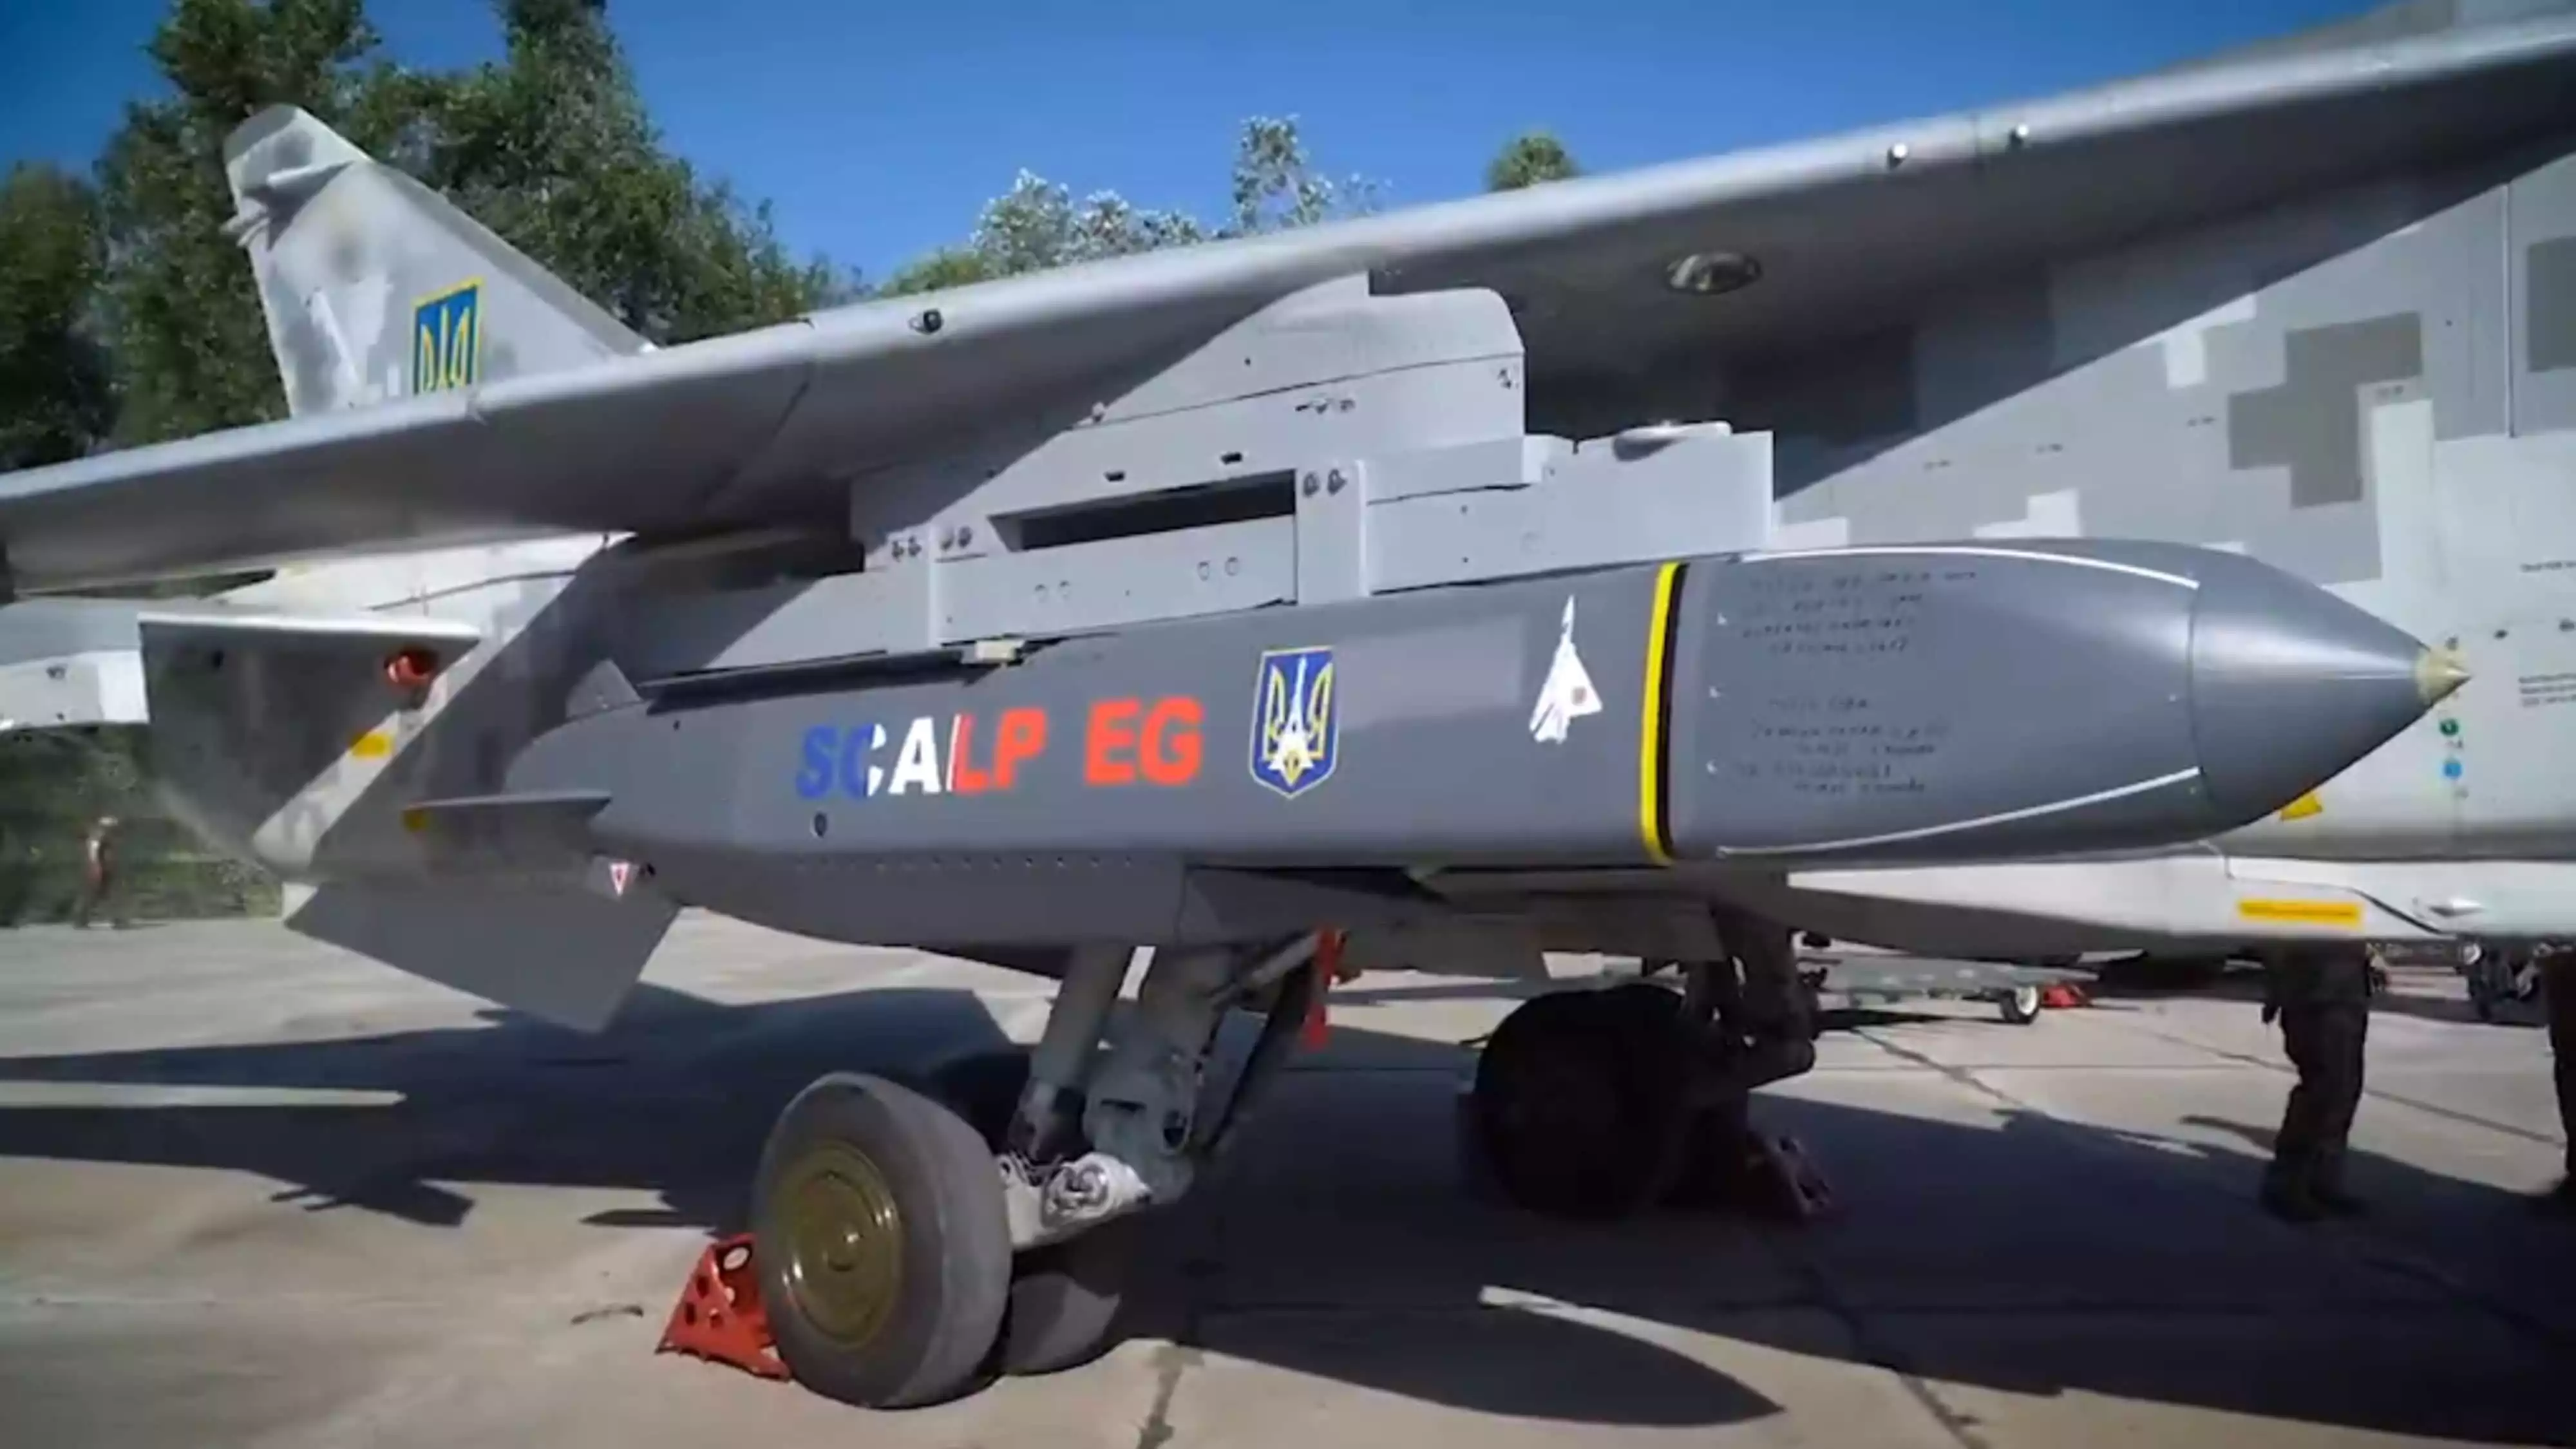 Missile de croisière courte portée air-sol SCALP-EG français sous l'aile d'un bombardier ukrainien Su-24 Fencer.